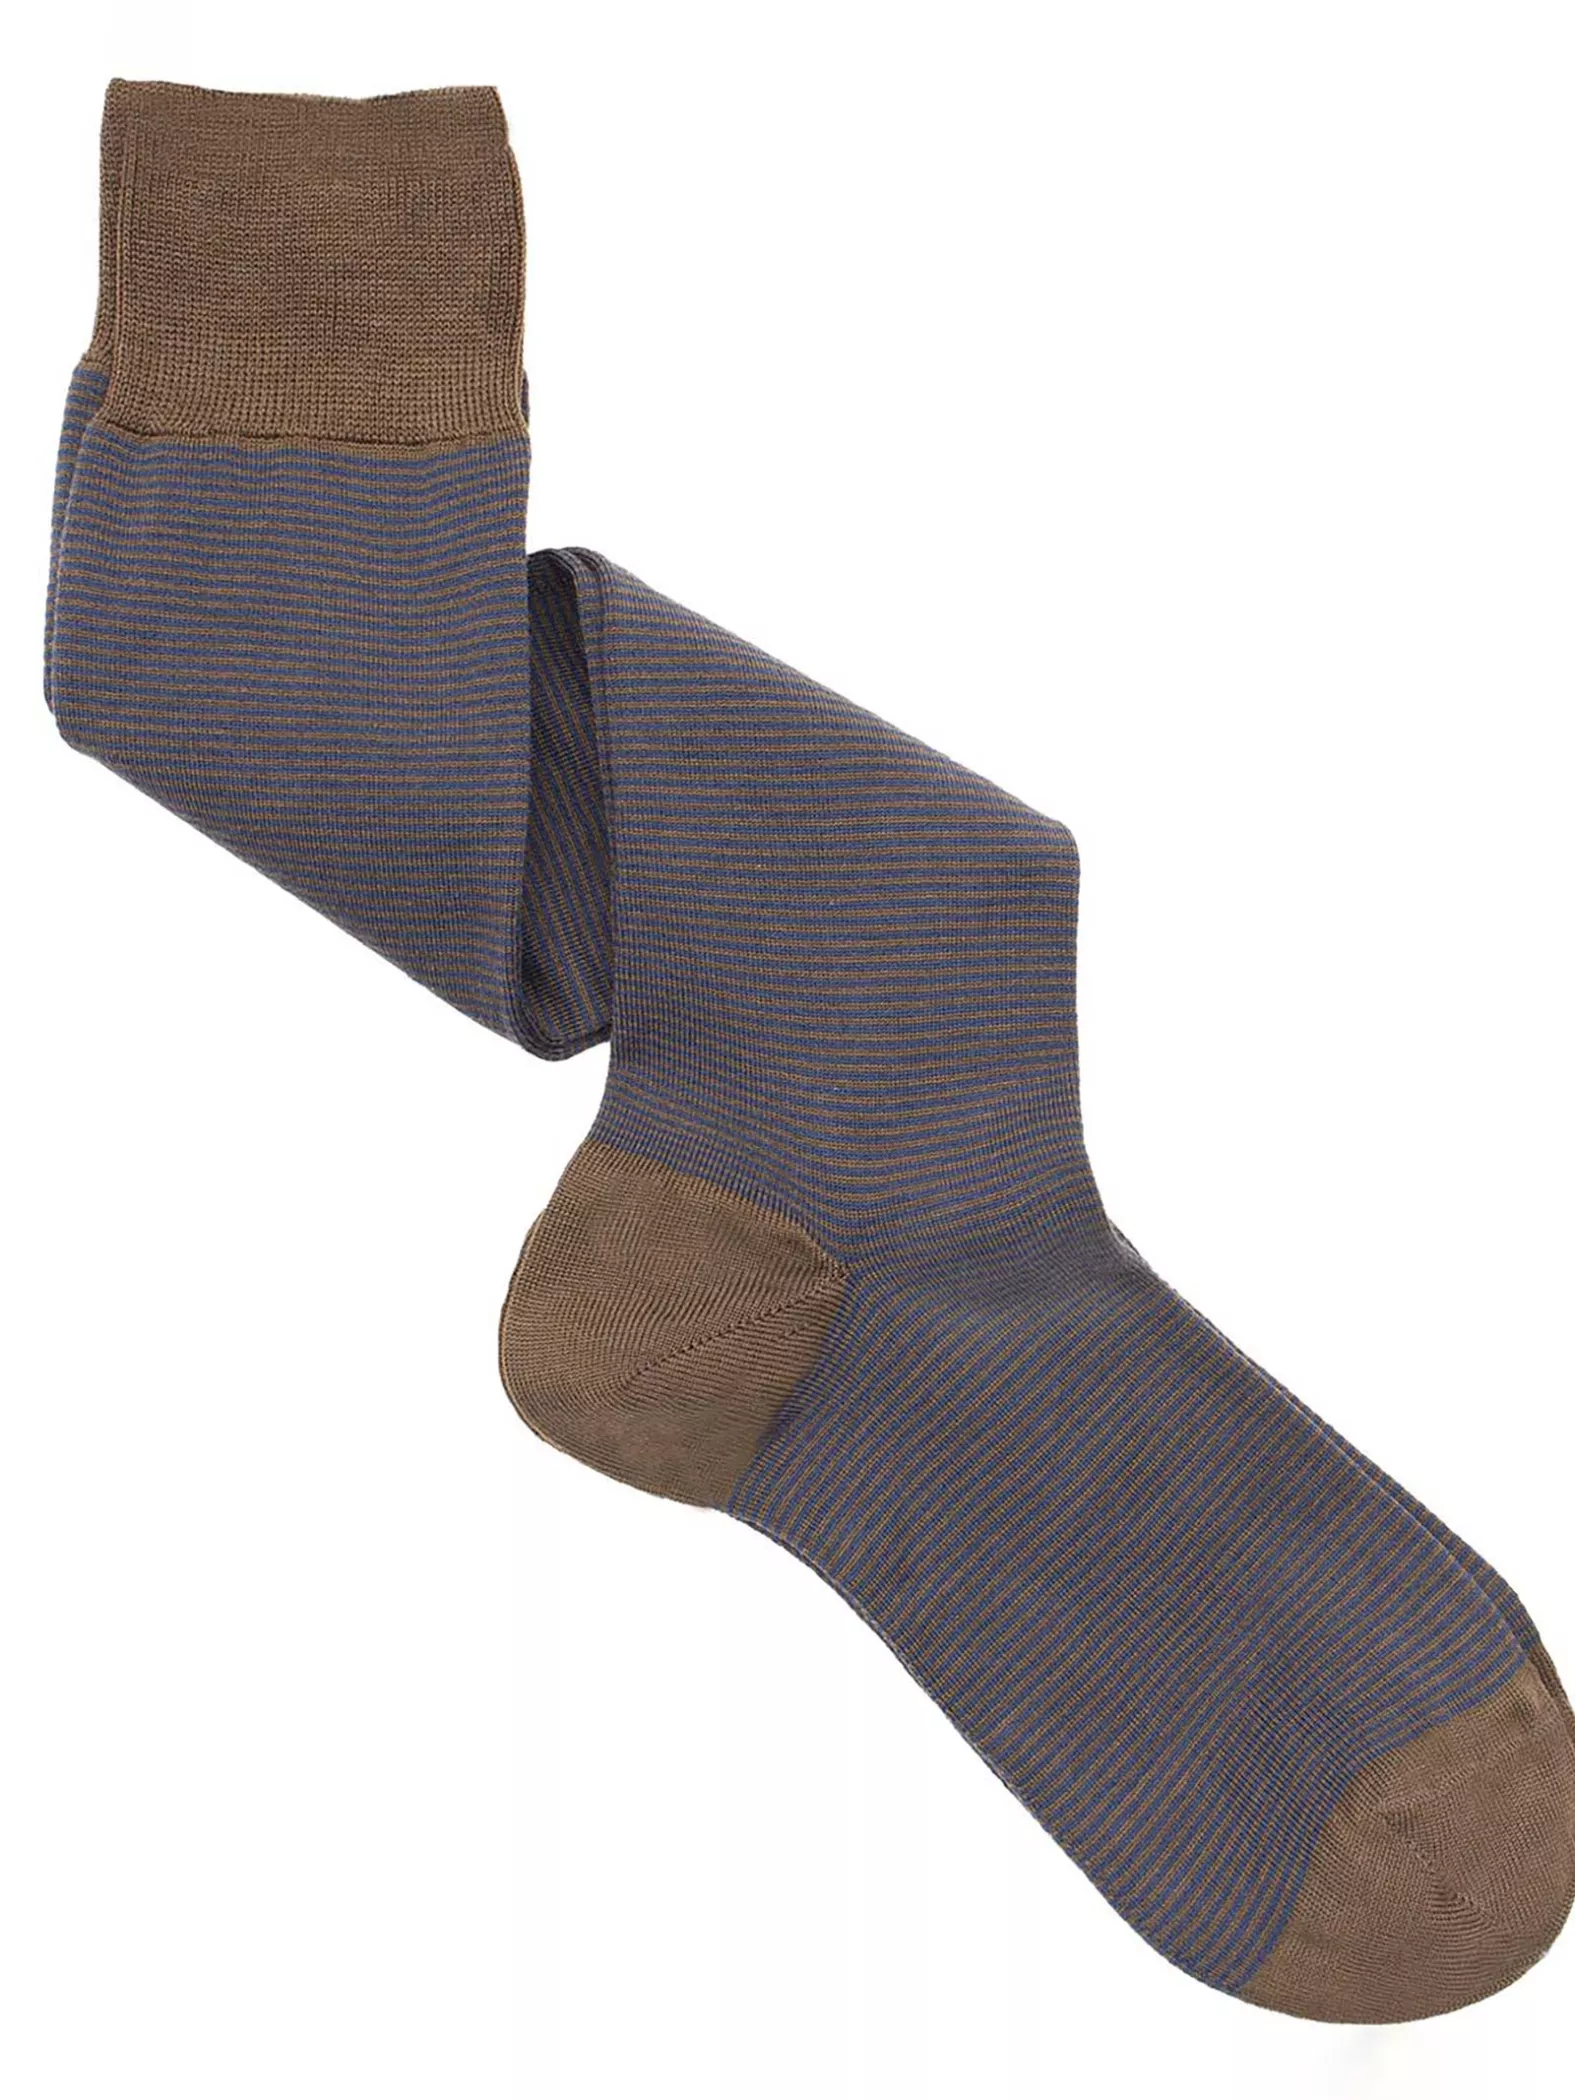 Elegant Striped Patterned Wool Men's Long Socks - One Size